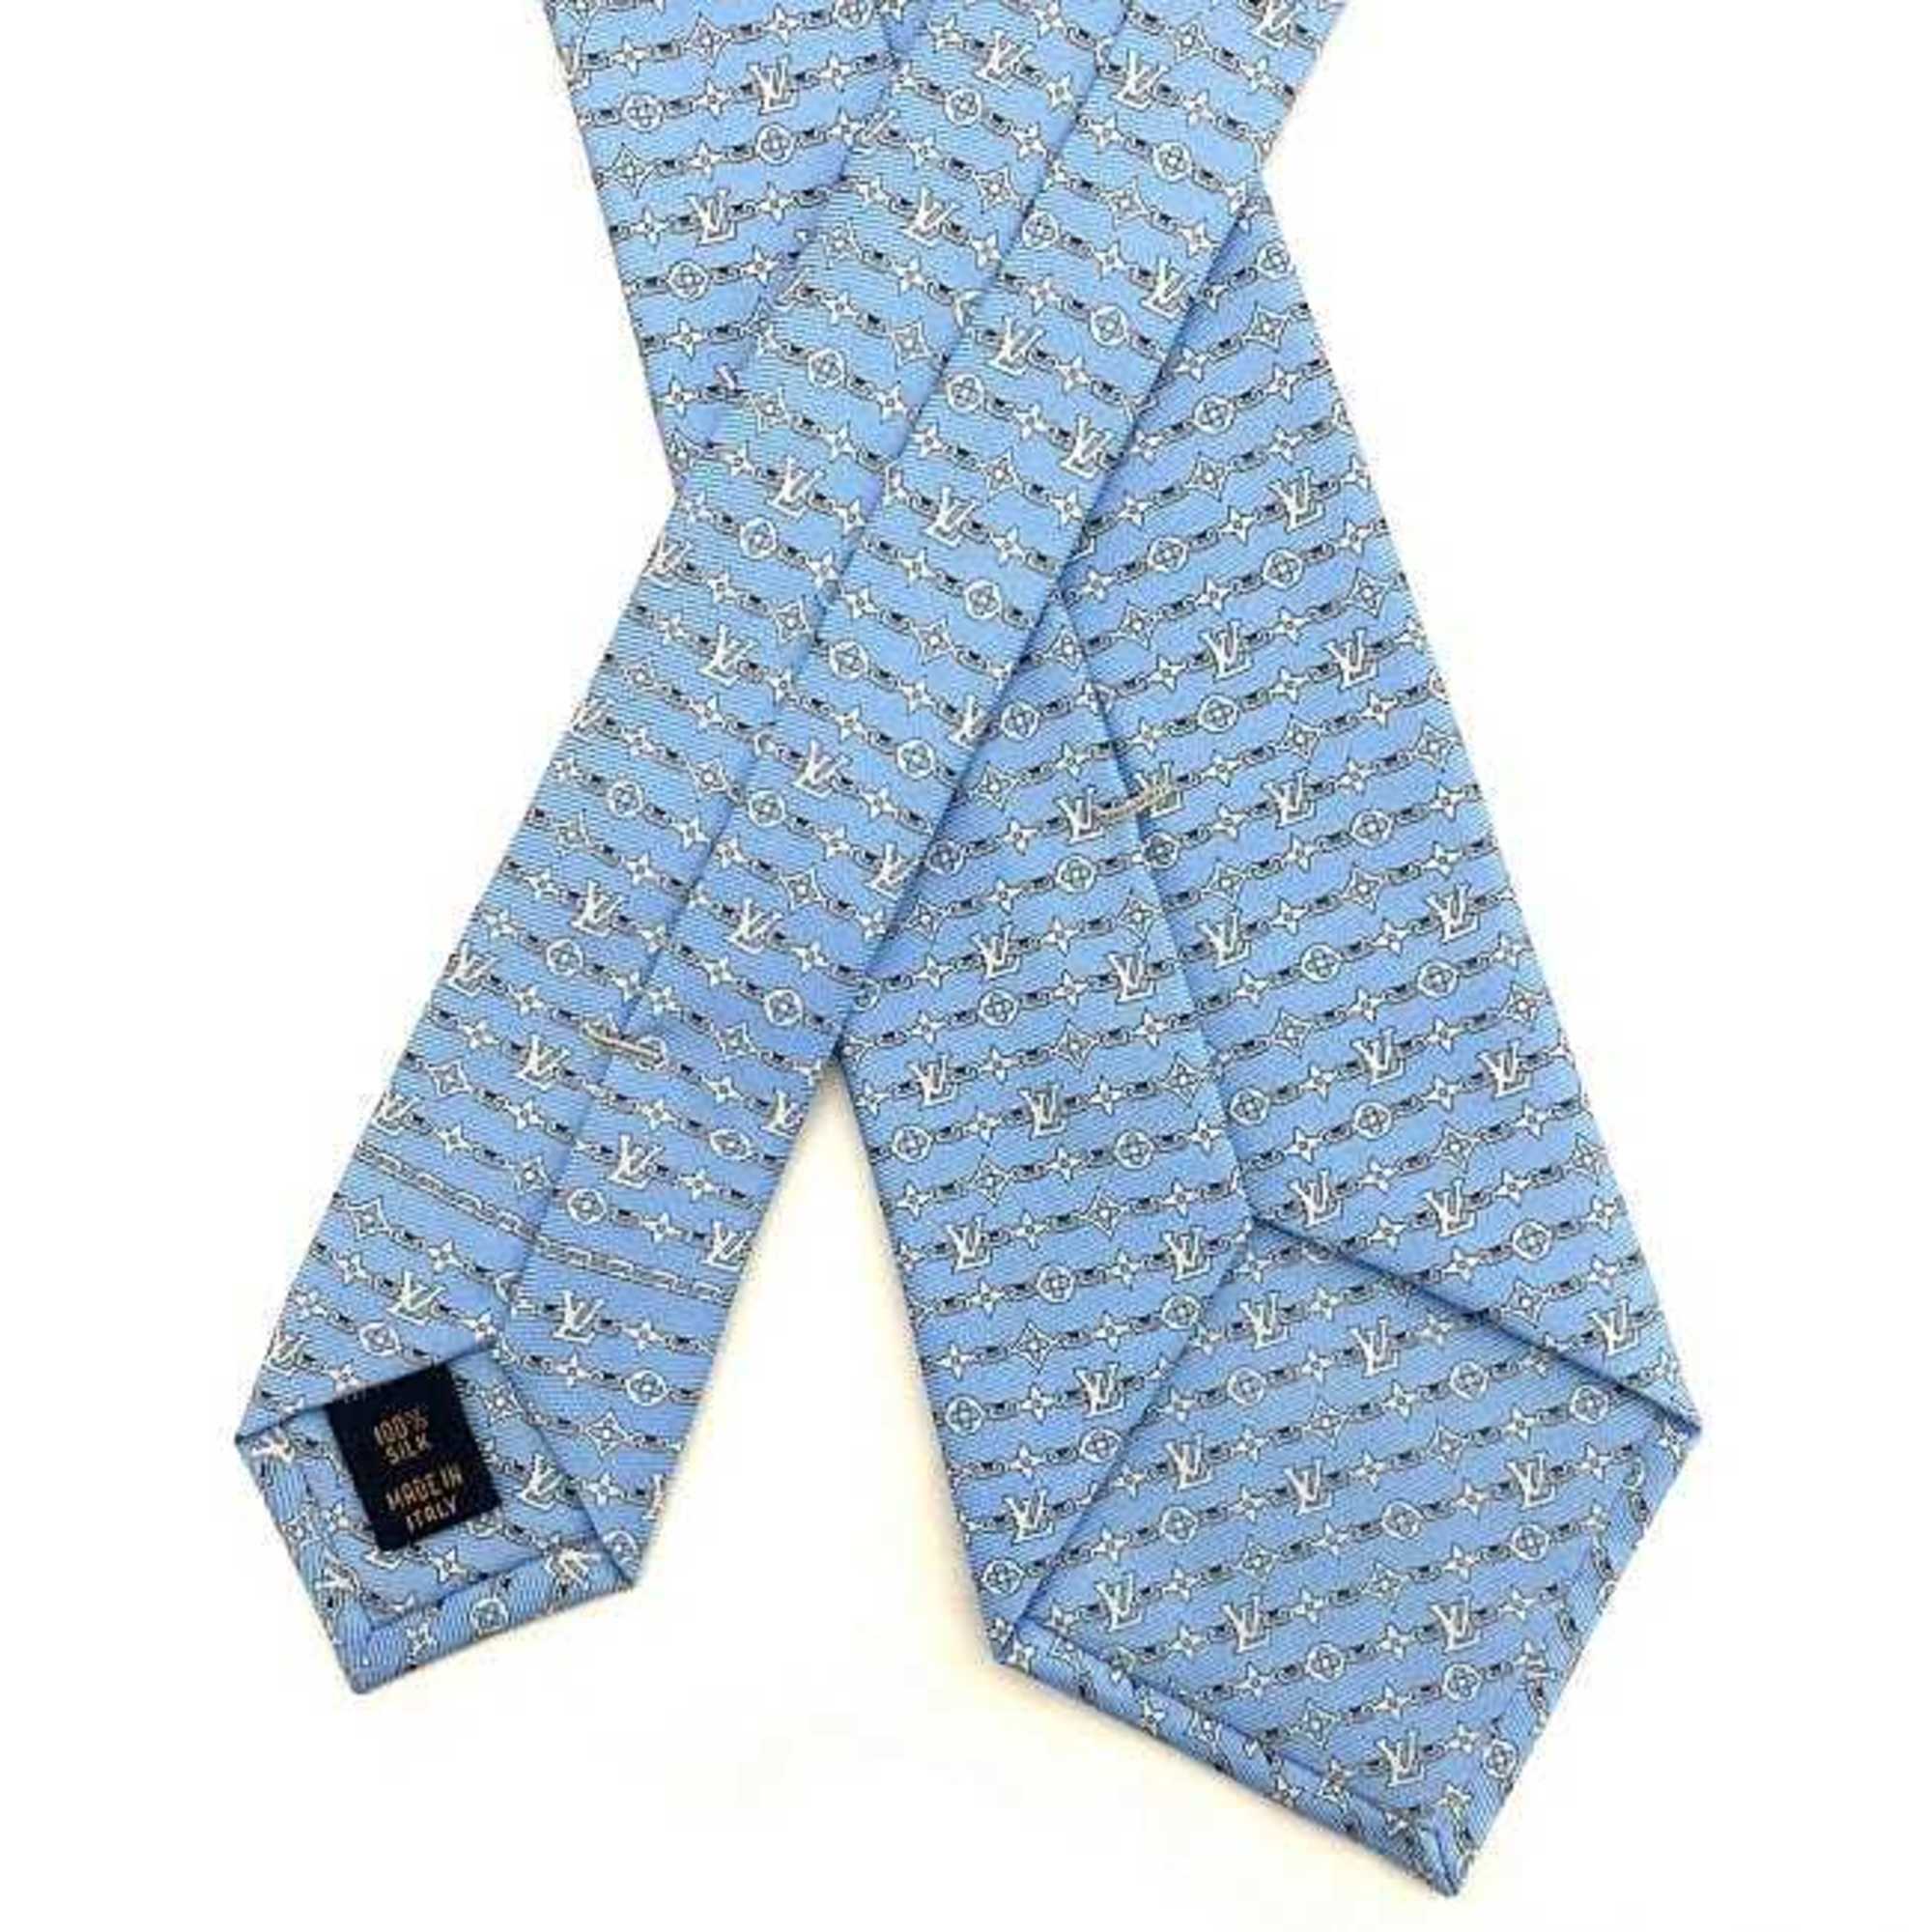 Louis Vuitton tie light blue monogram M73579 silk 100% MR0139 LOUIS VUITTON men's iconic